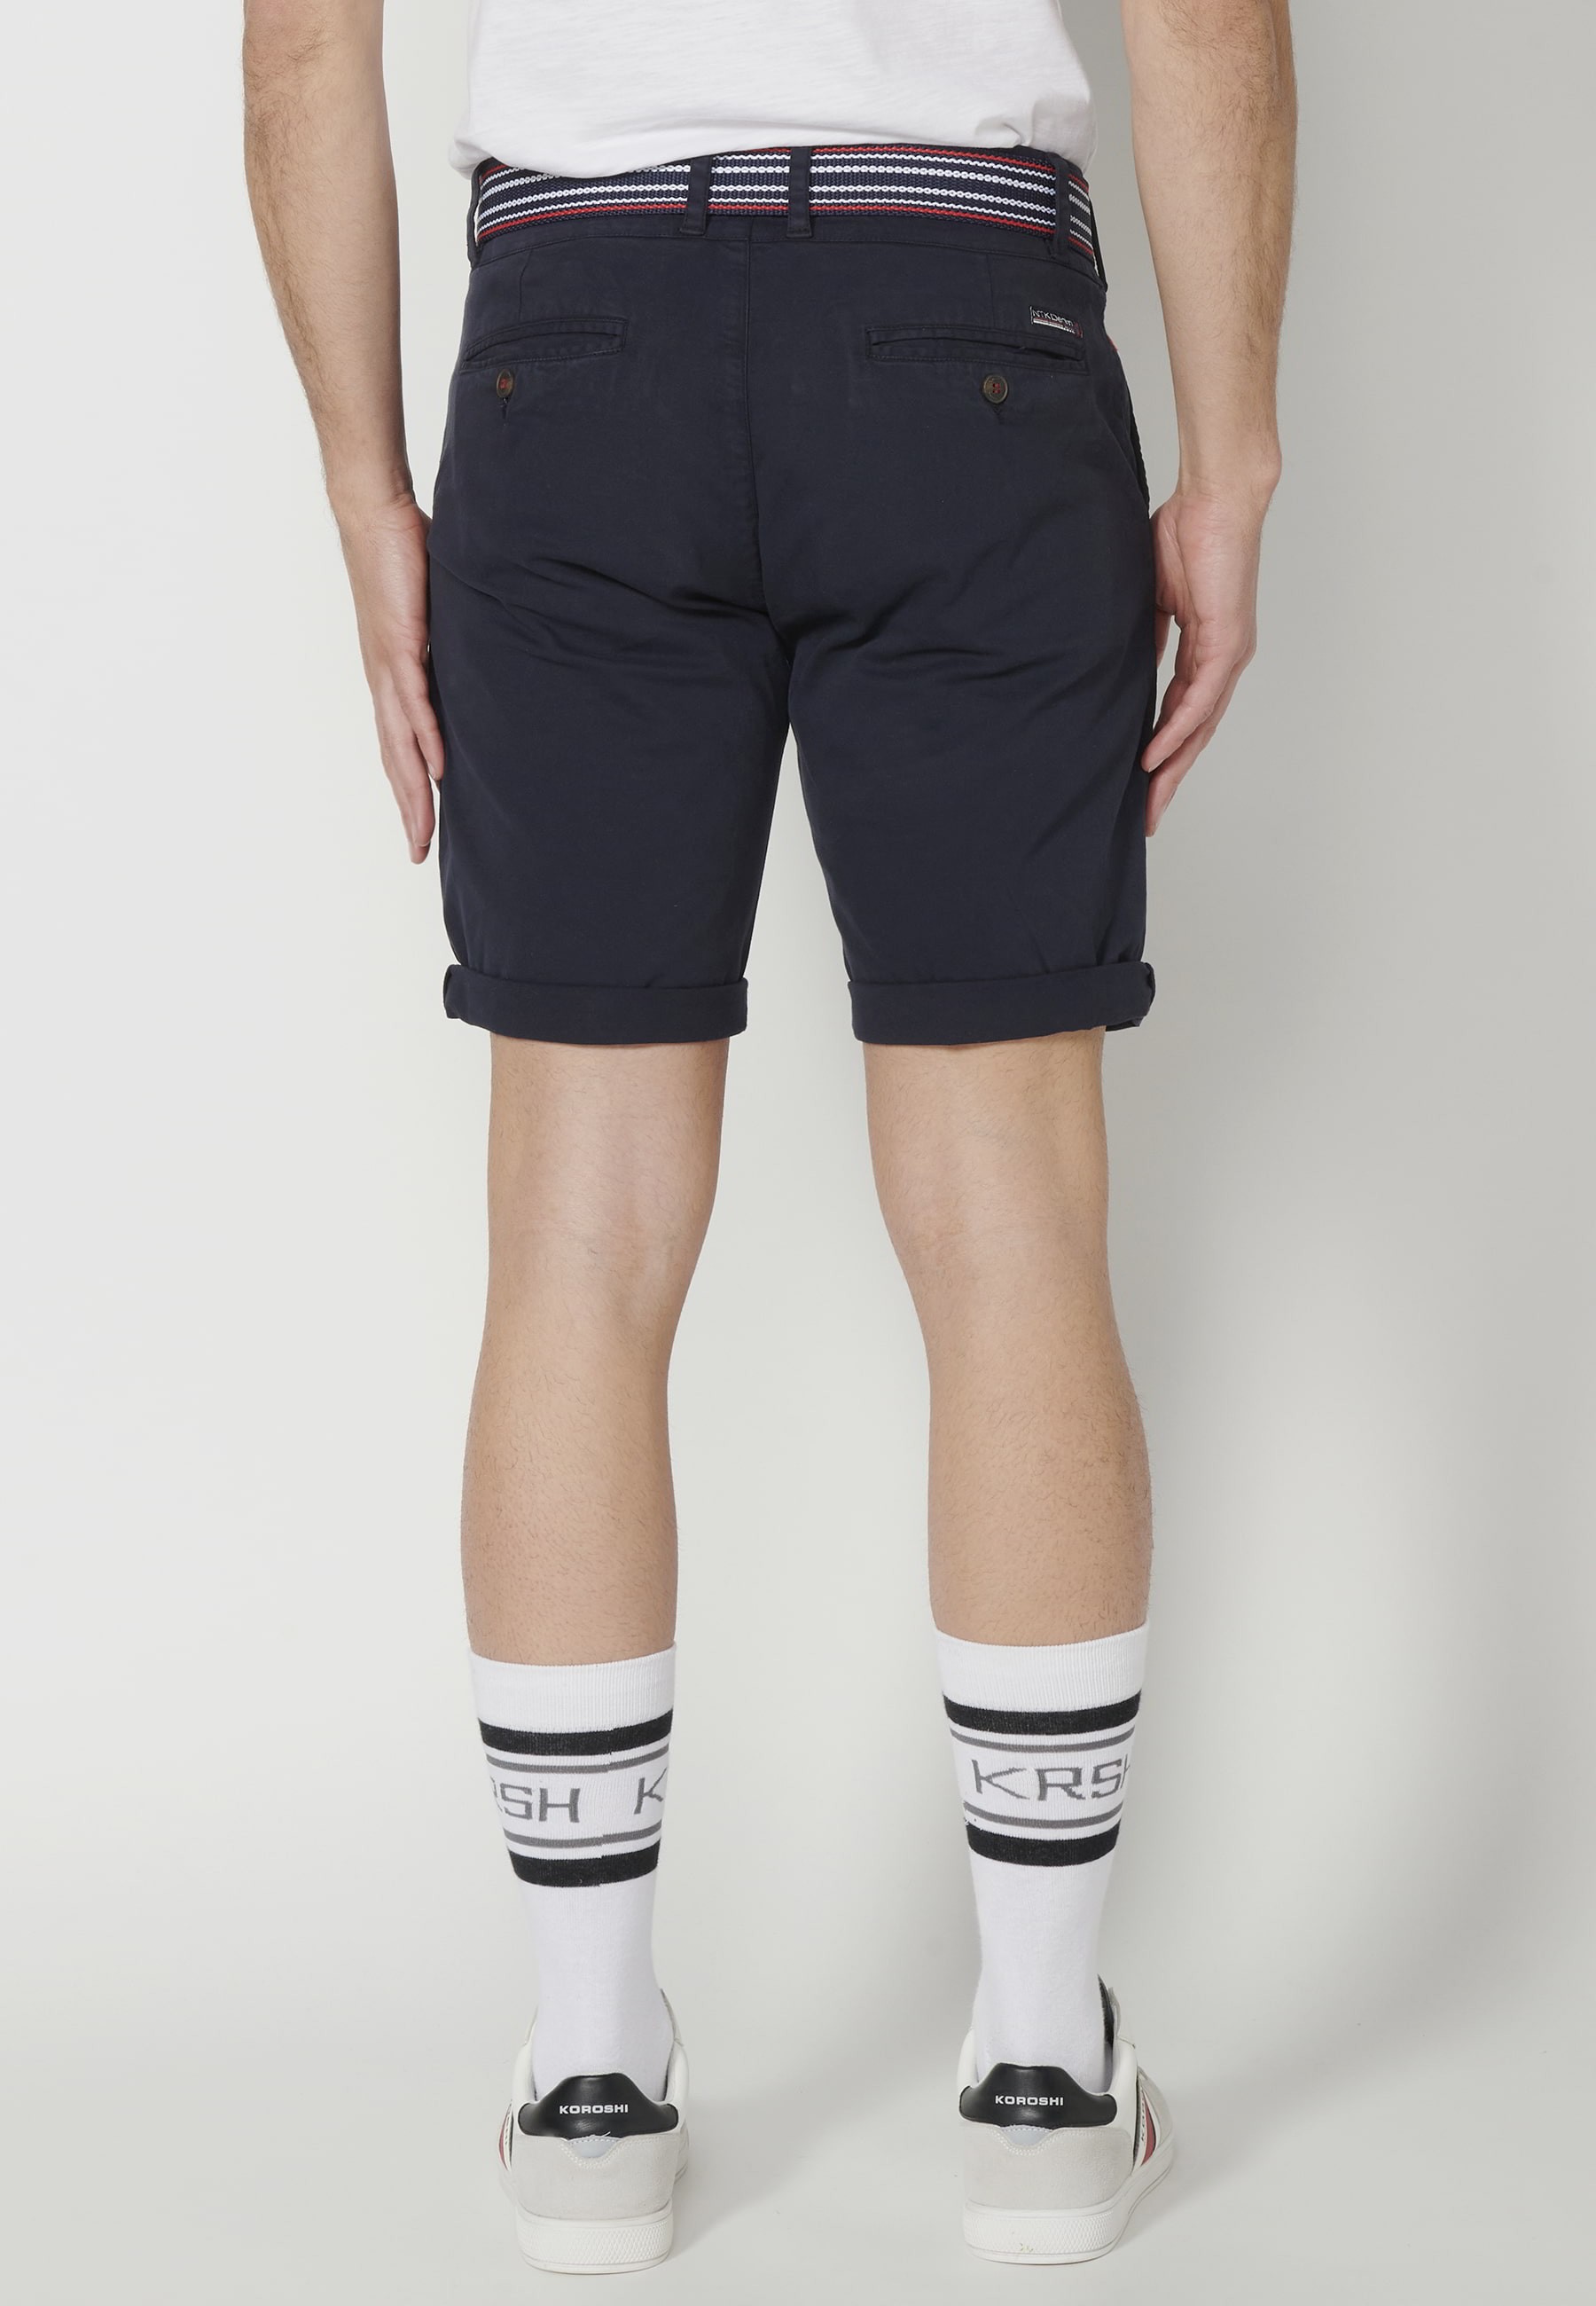 Pantalón corto Bermuda estilo Chino color Navy para Hombre